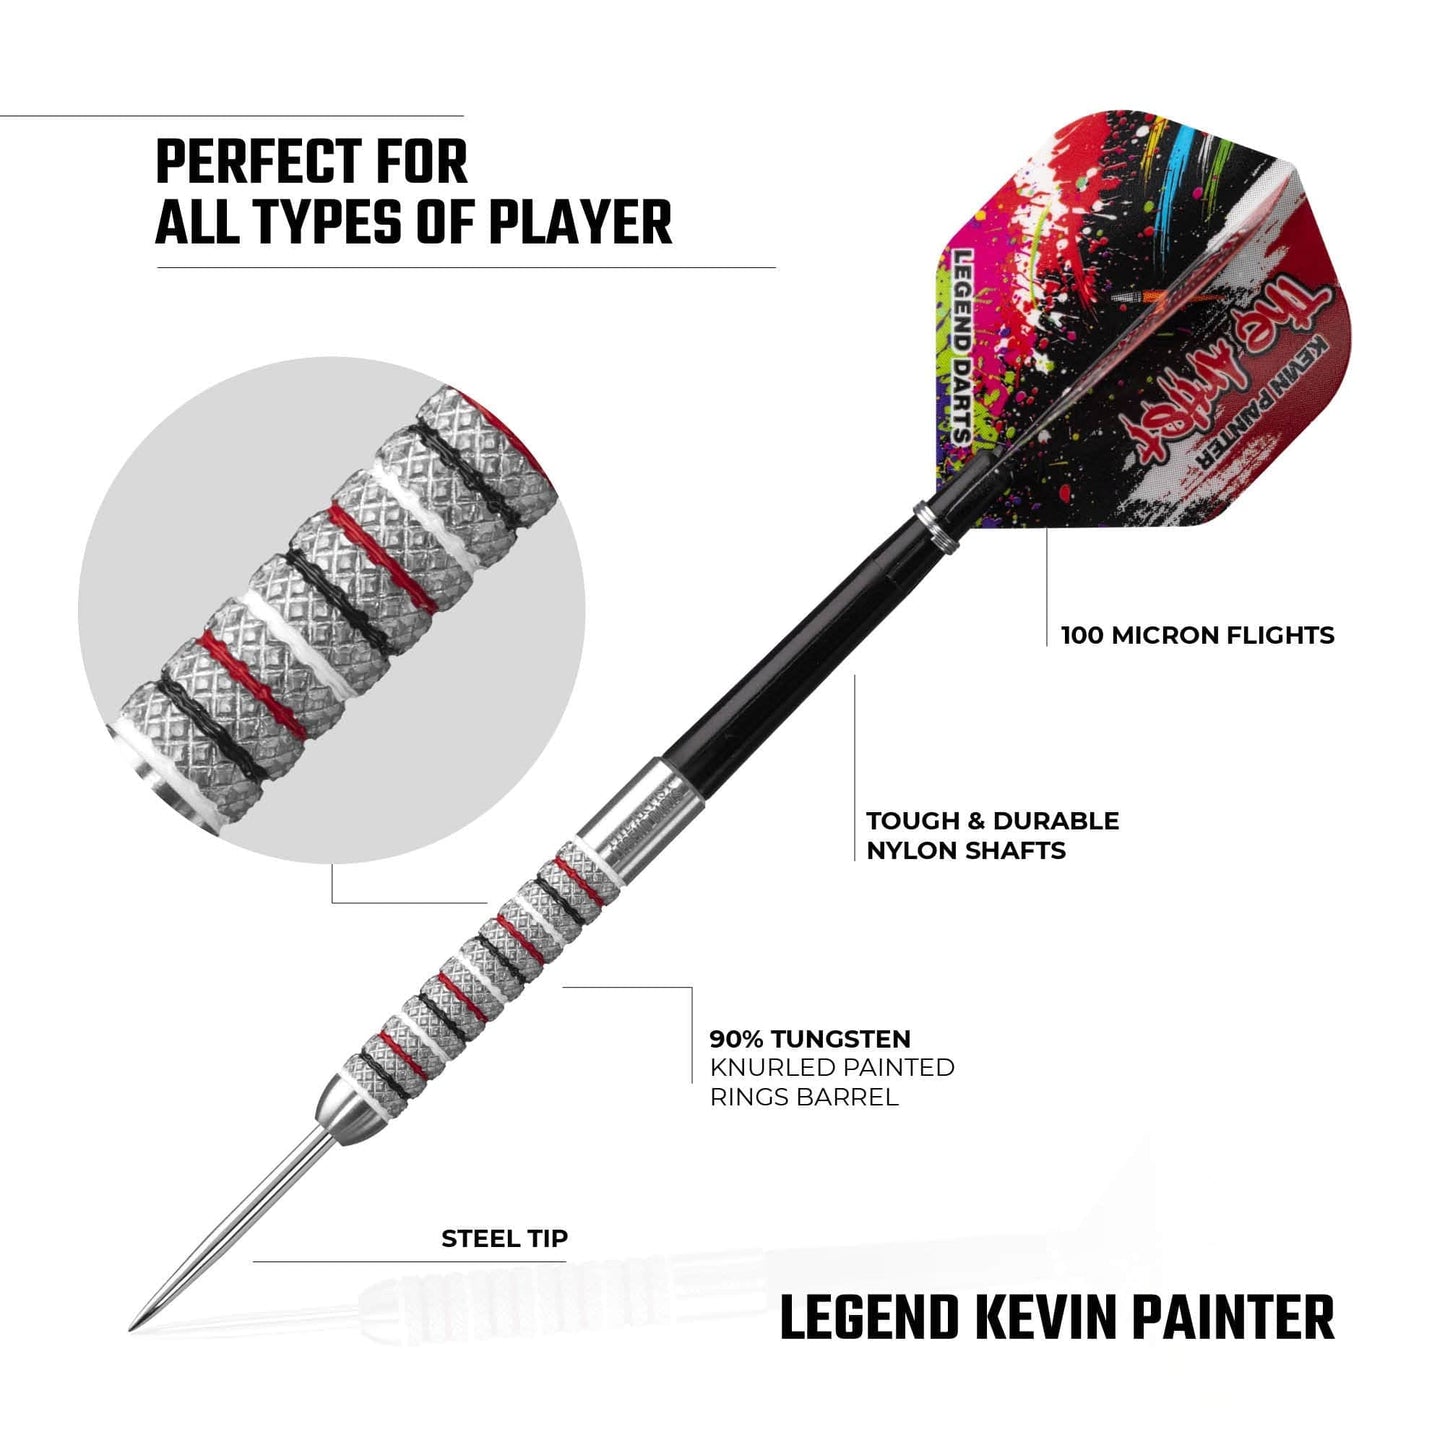 Legend Darts - Steel Tip - 90% Tungsten - Knurled - The Artist - Kevin Painter